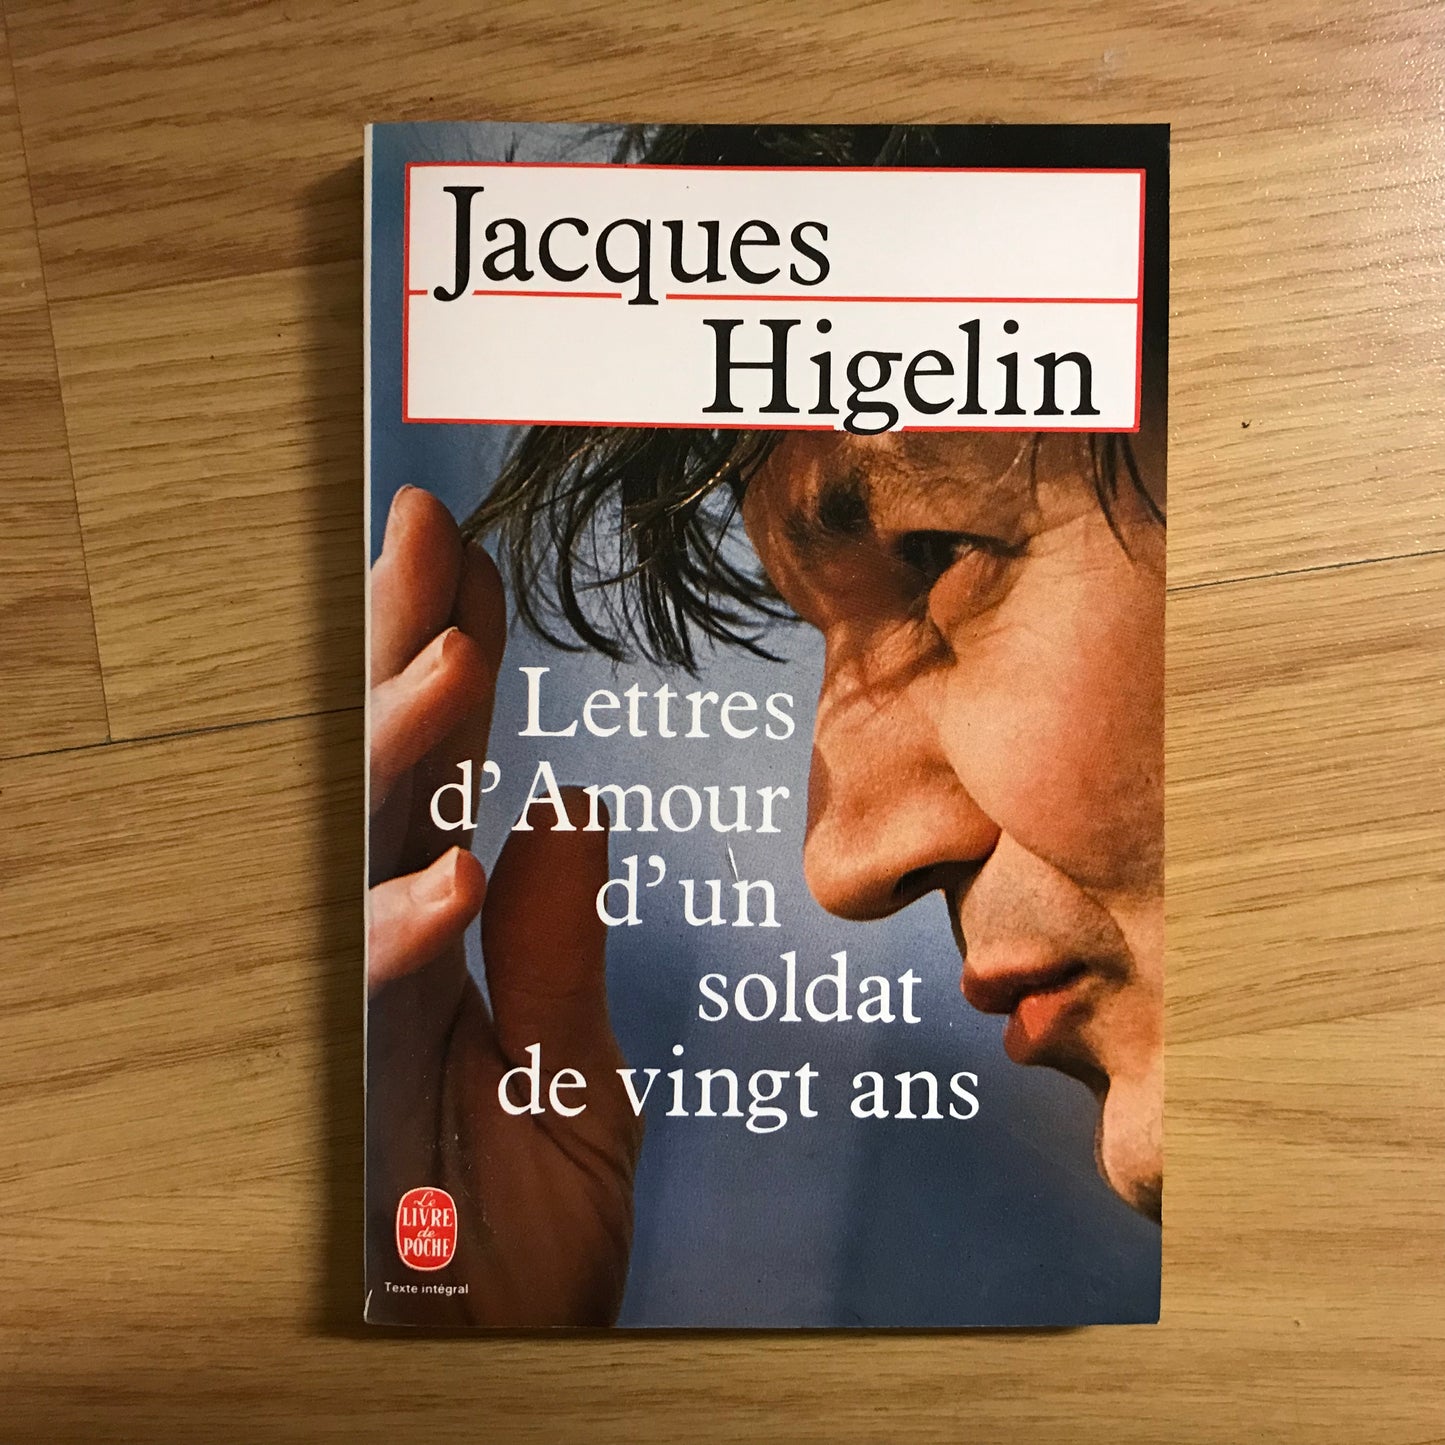 Higelin, Jacques - Lettres d’amour d’un soldat de 20 ans